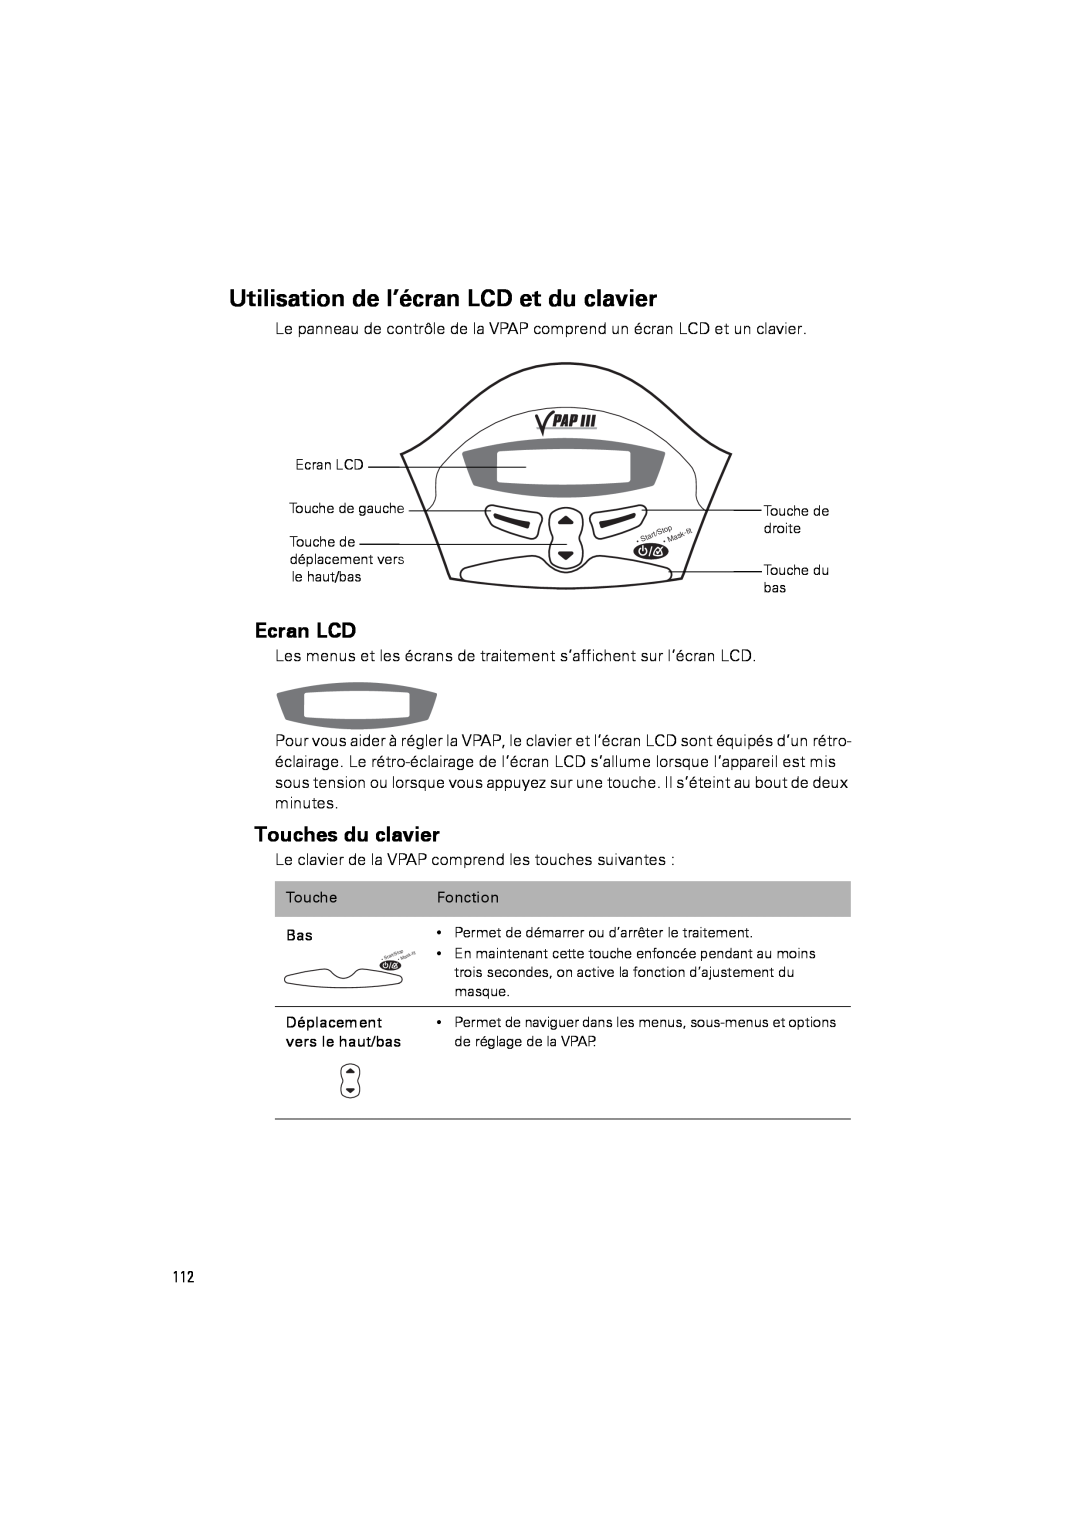 ResMed III & III ST user manual Utilisation de l’écran LCD et du clavier, Ecran LCD, Touches du clavier 